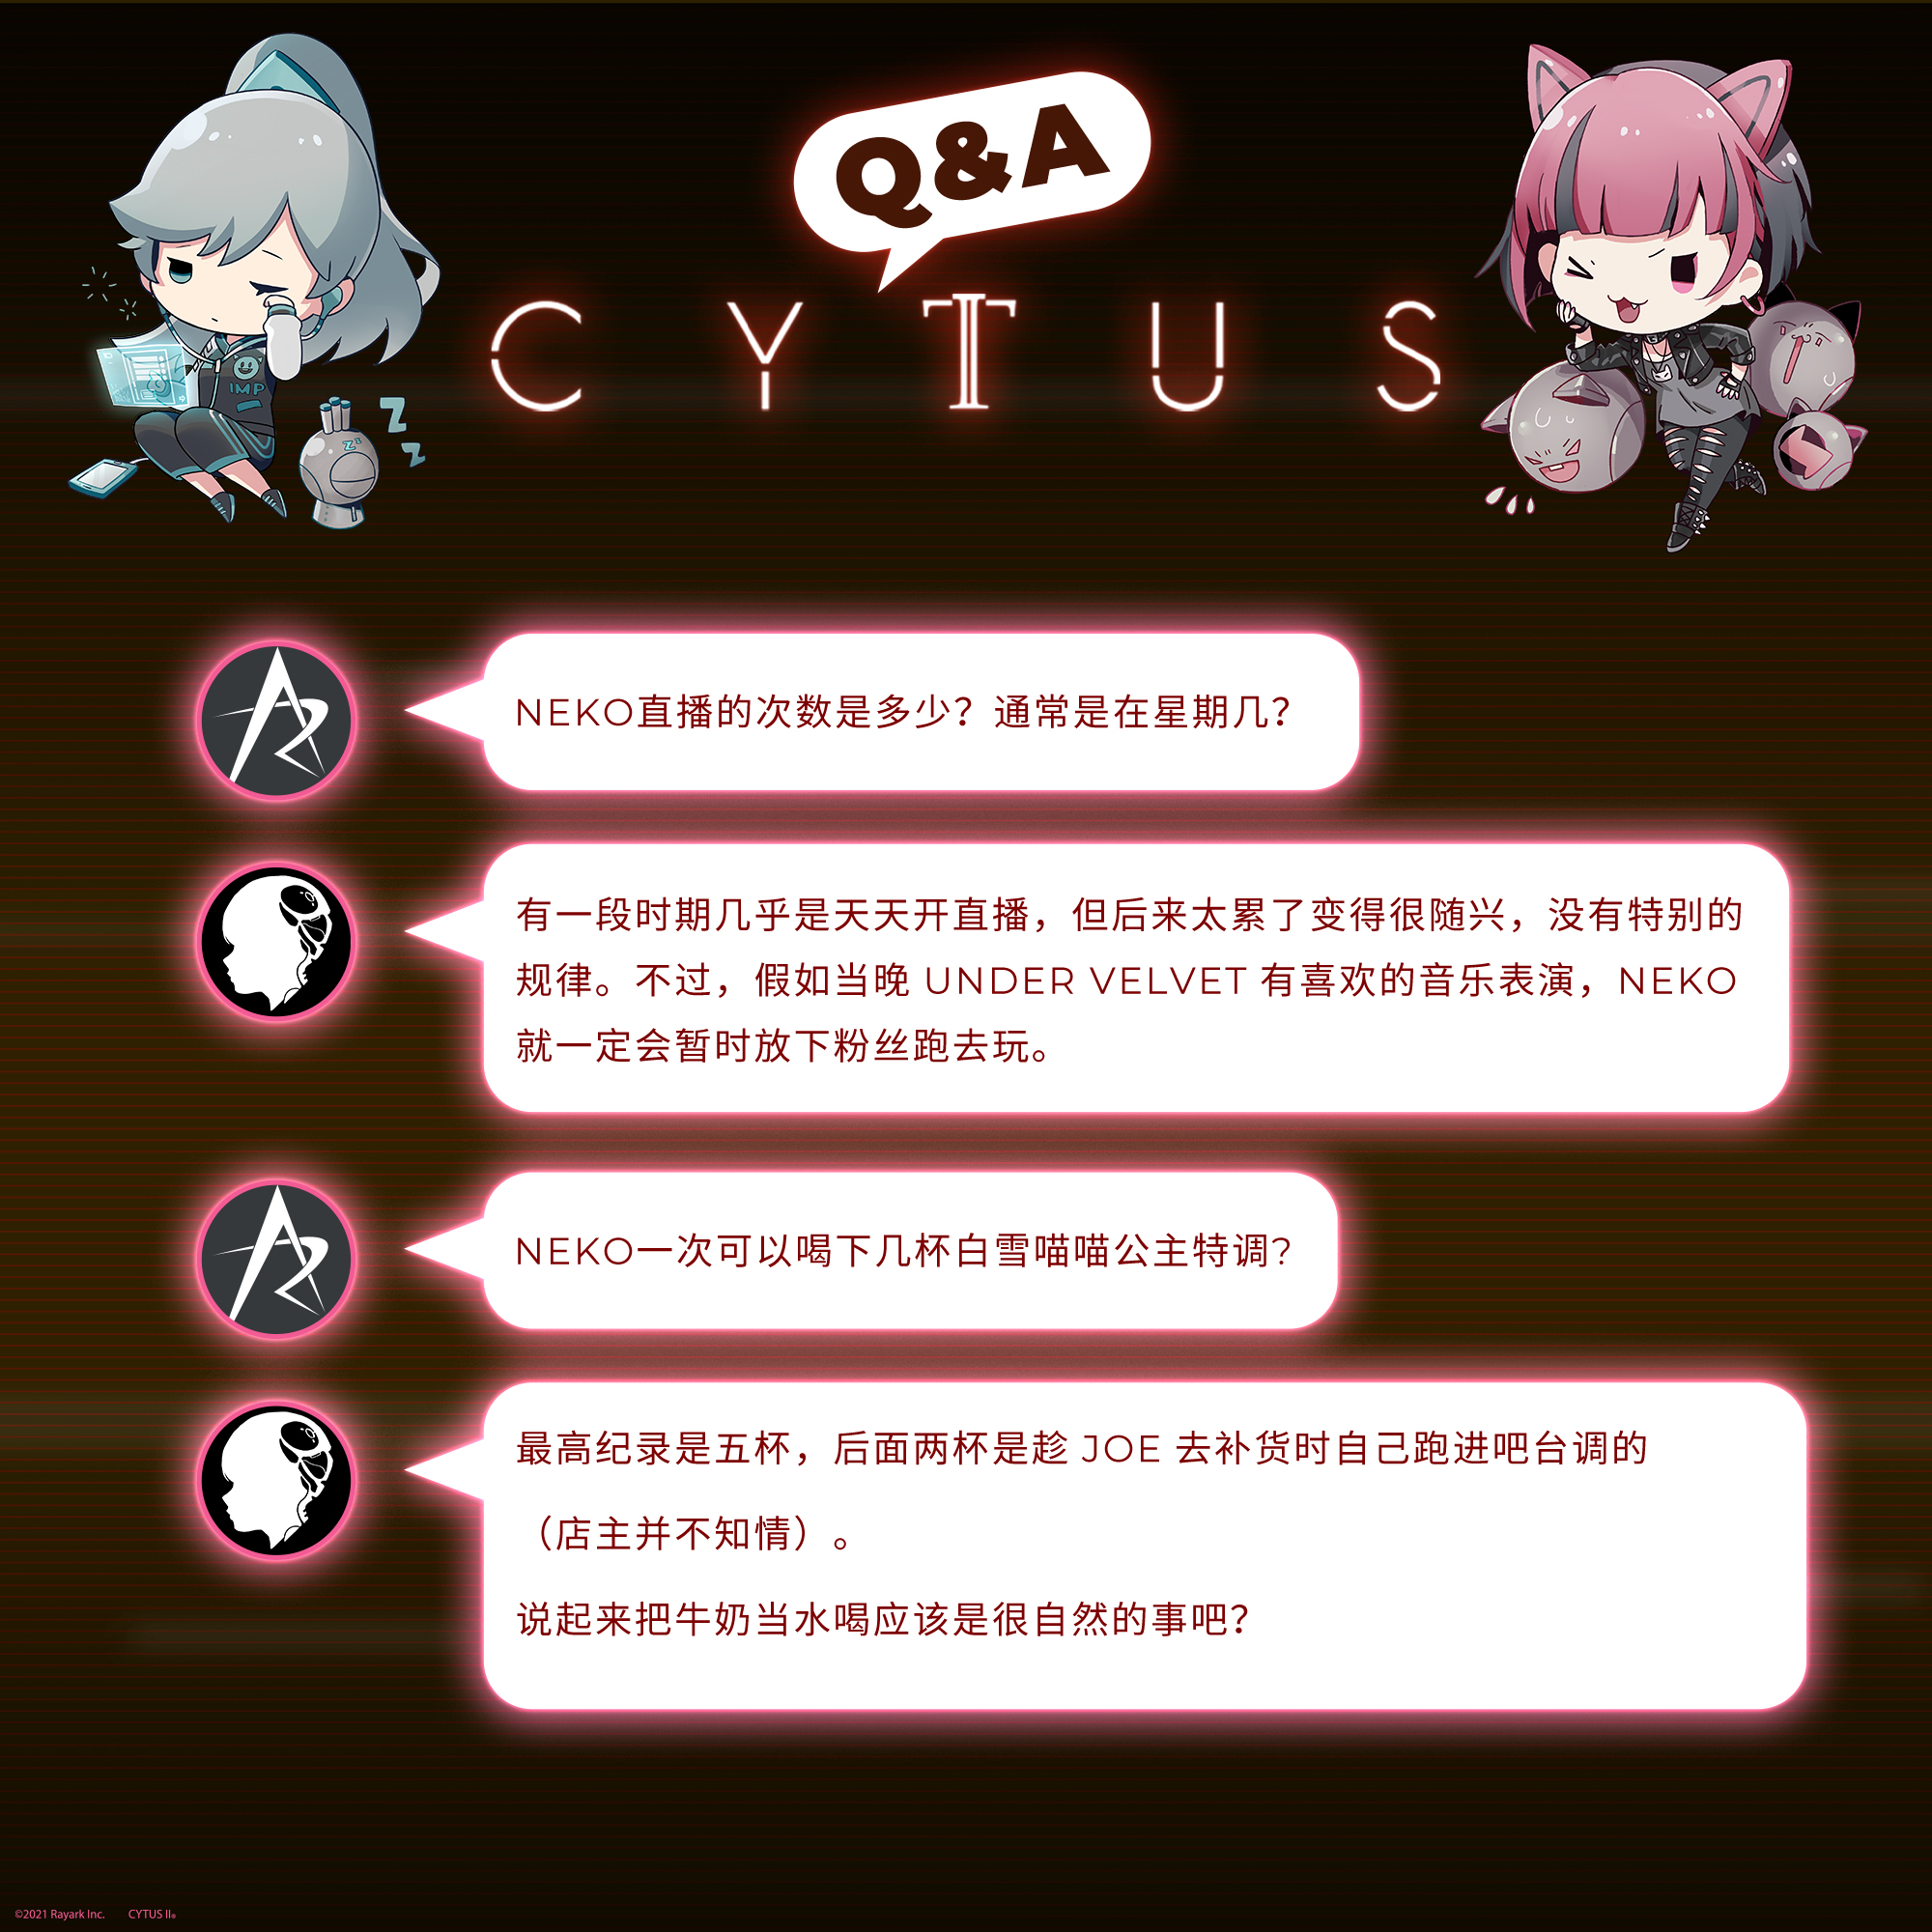 ■ Cytus II Q&A part 7 ■